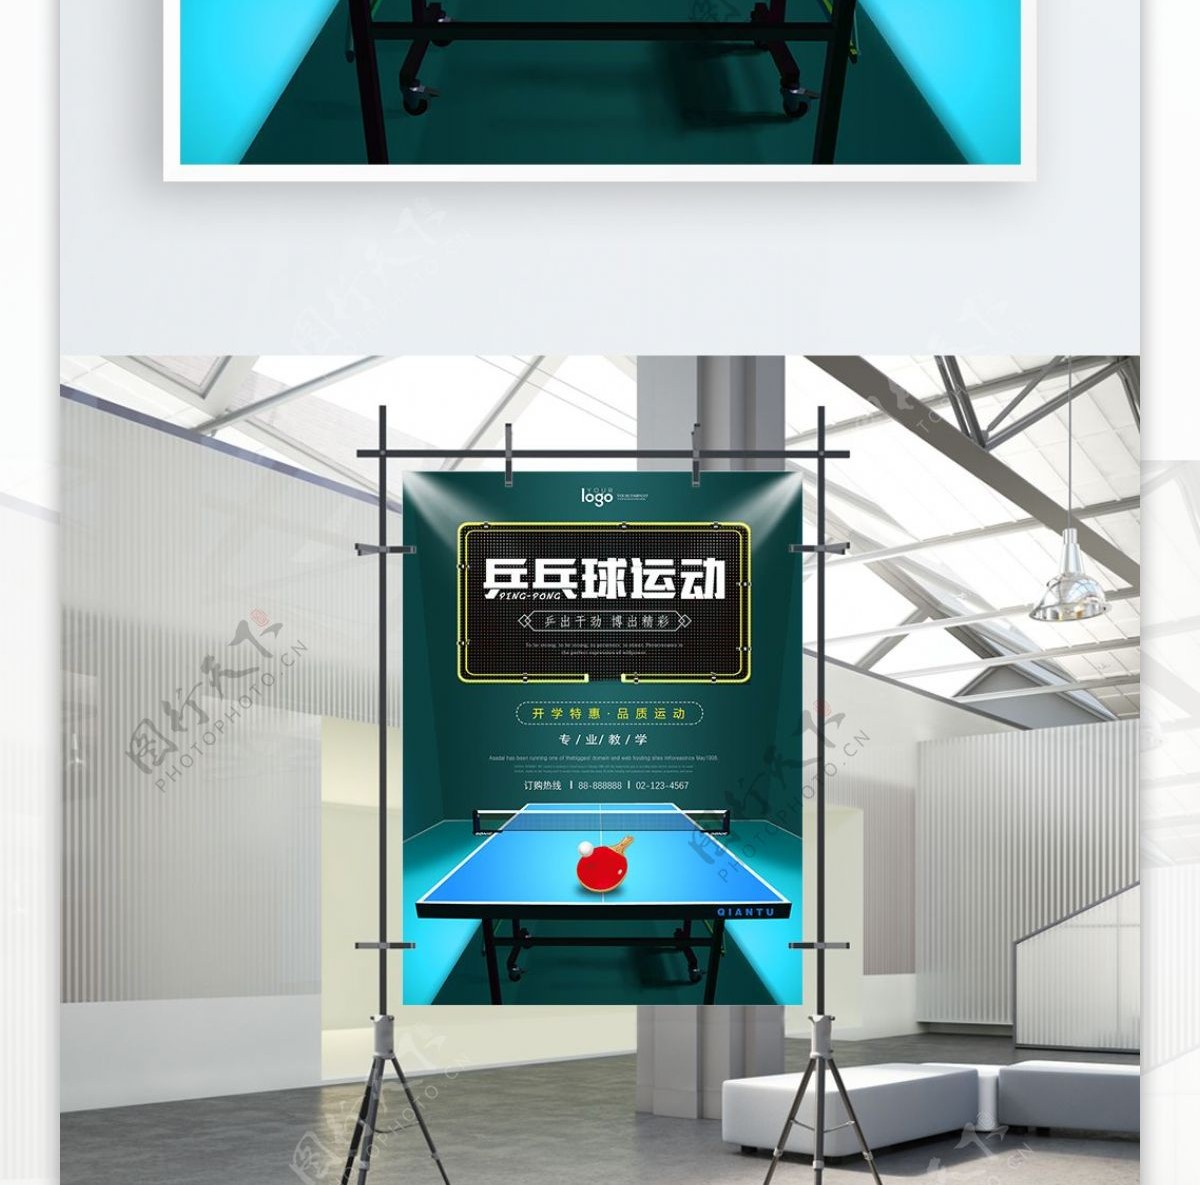 蓝色立体空间球台乒乓球运动海报设计